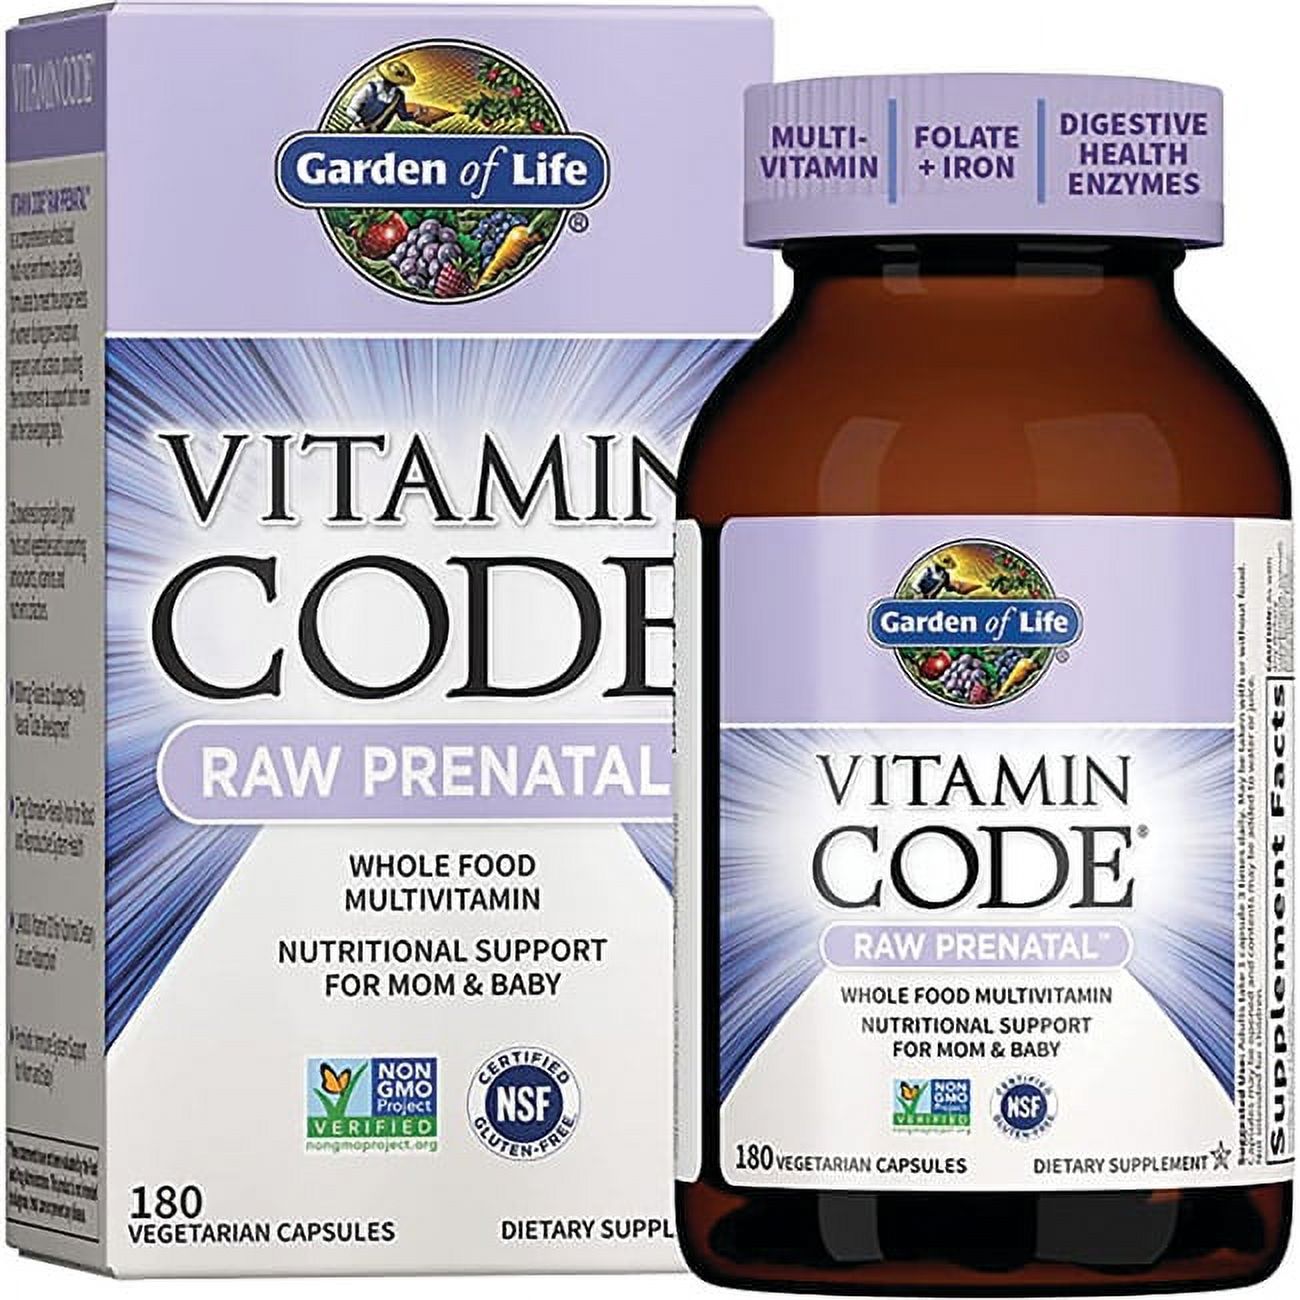 Garden of Life Vitamin Code Raw Prenatal, 180 Capsules - image 1 of 2